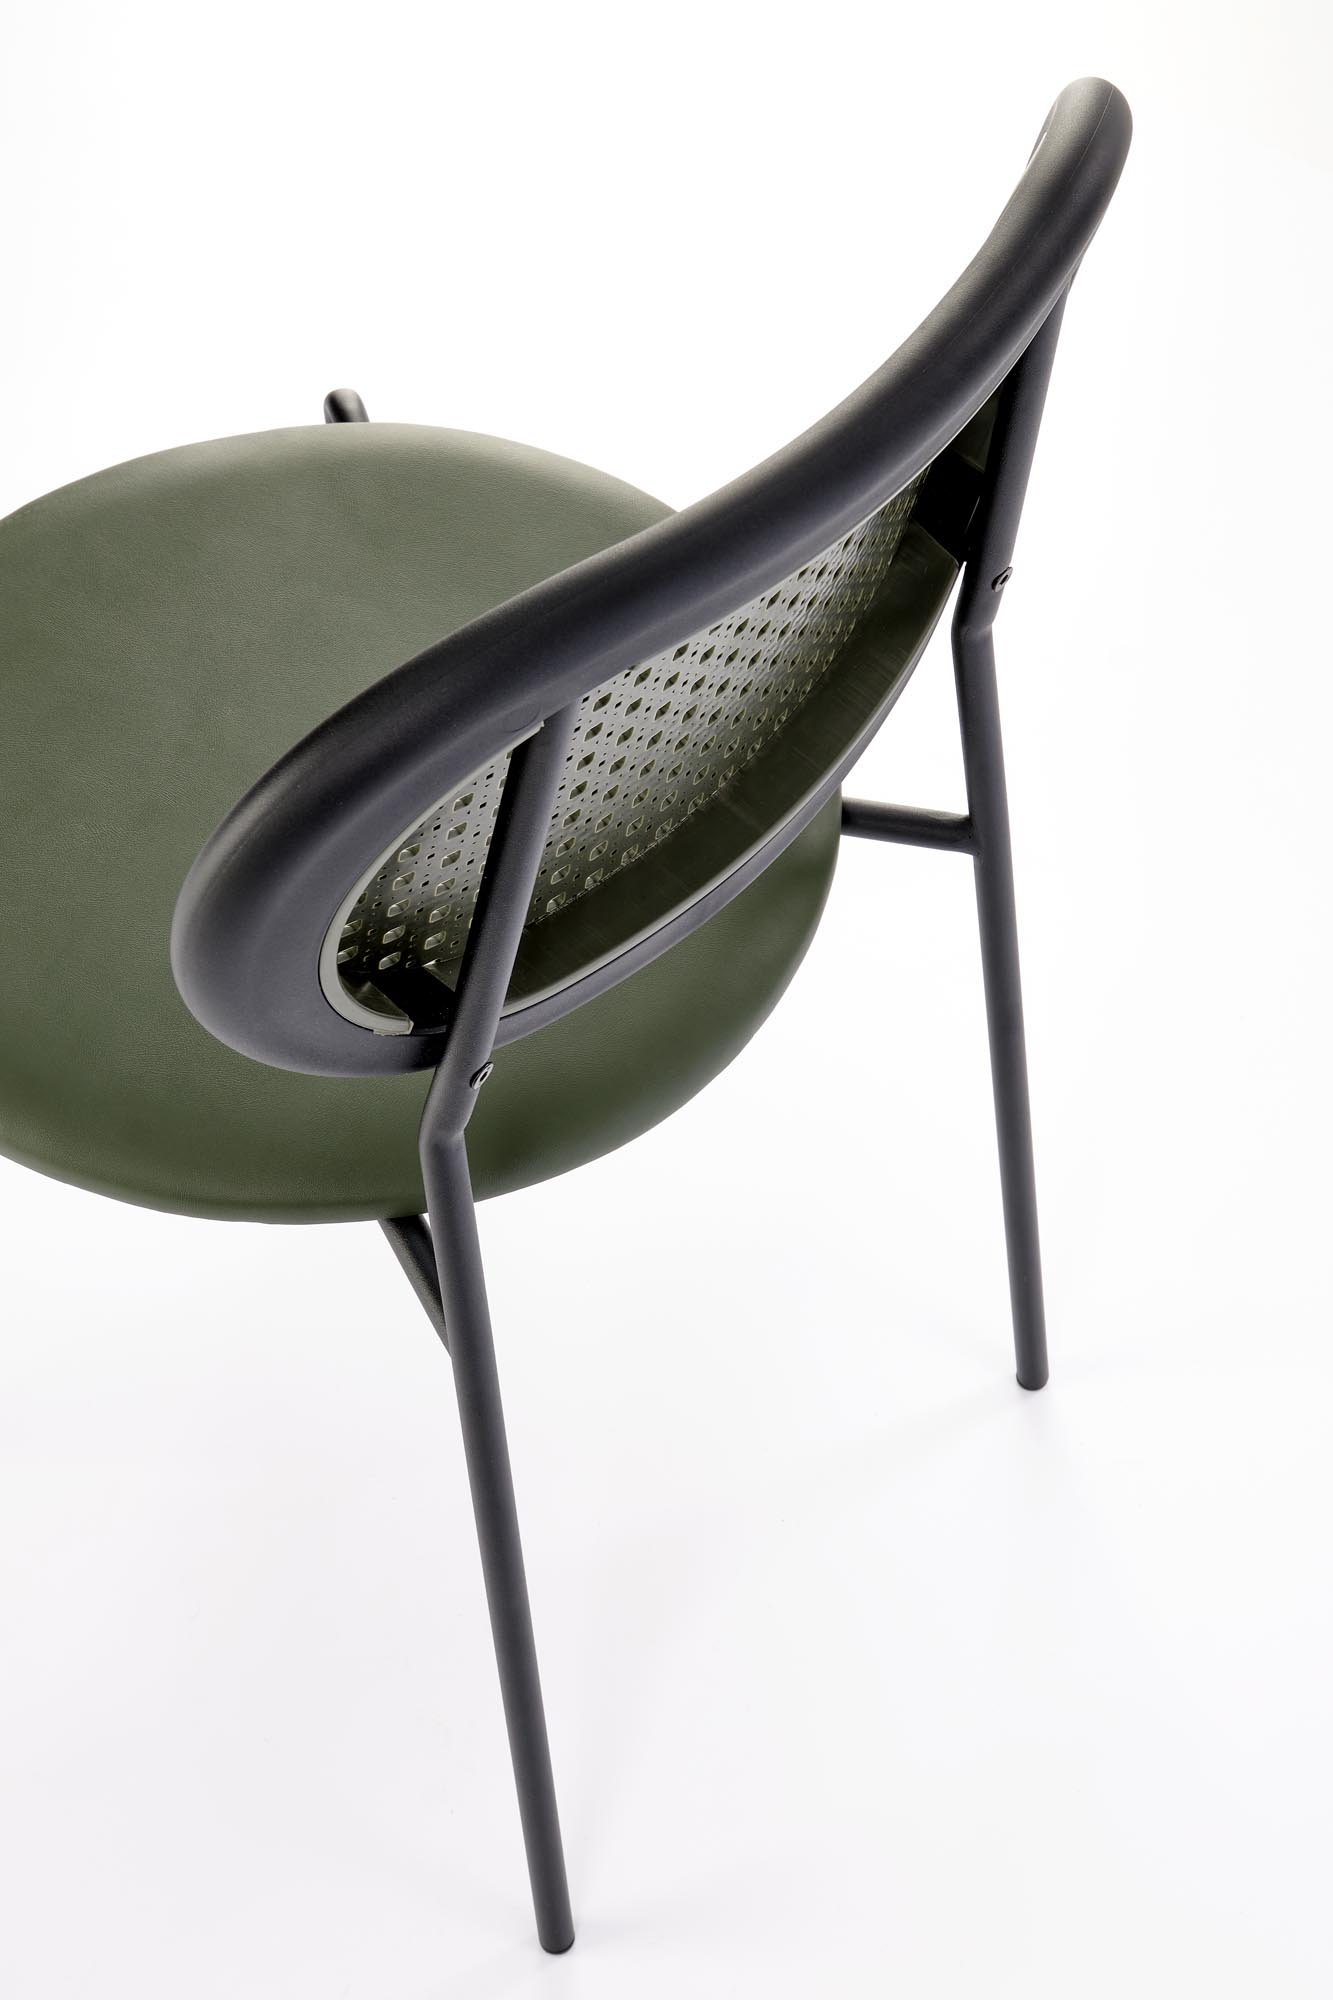 Krzesło K524 - zielony krzesło k524 - zielony